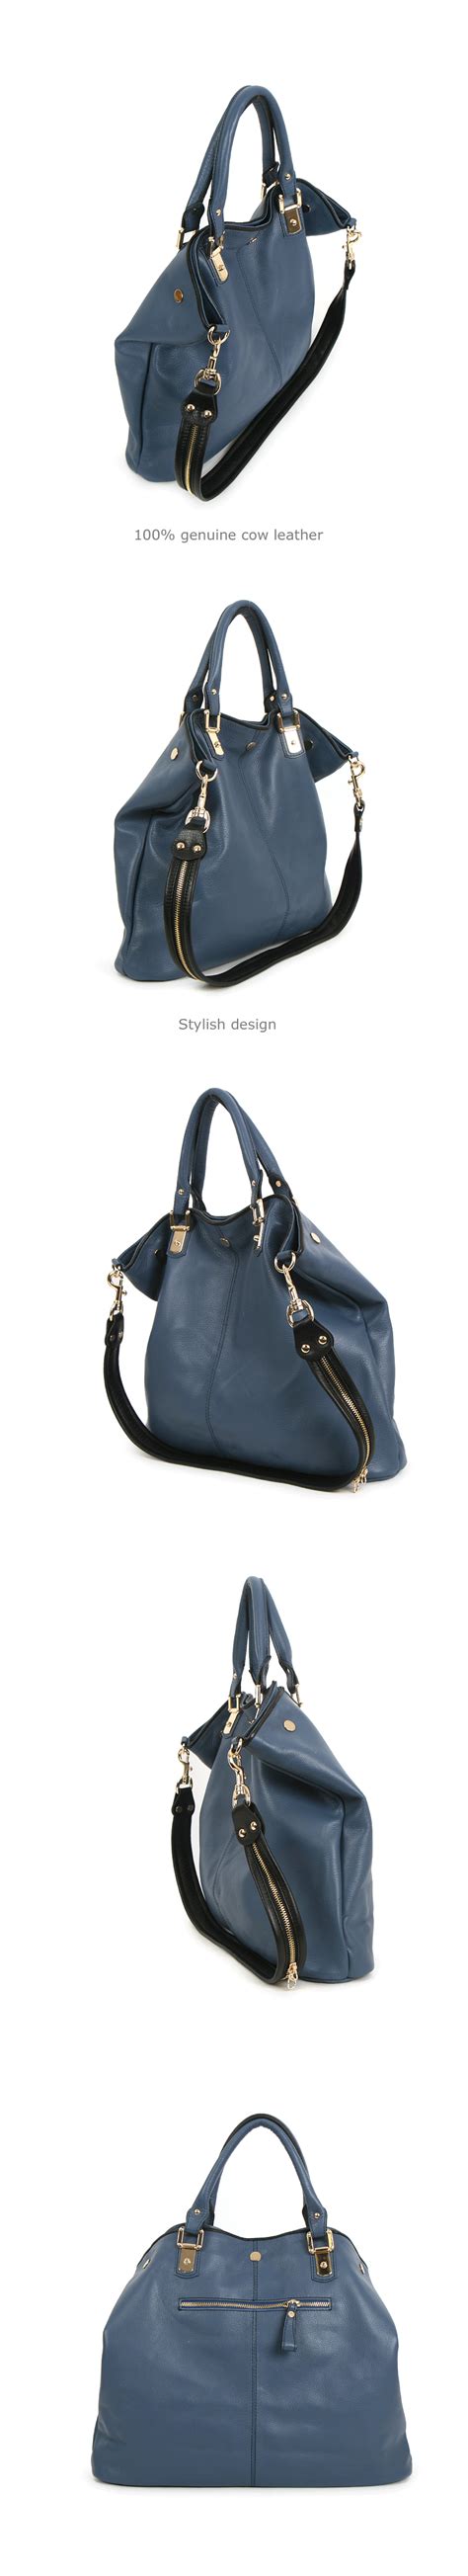 leather women bag shoulder handbag tote hobo black brown